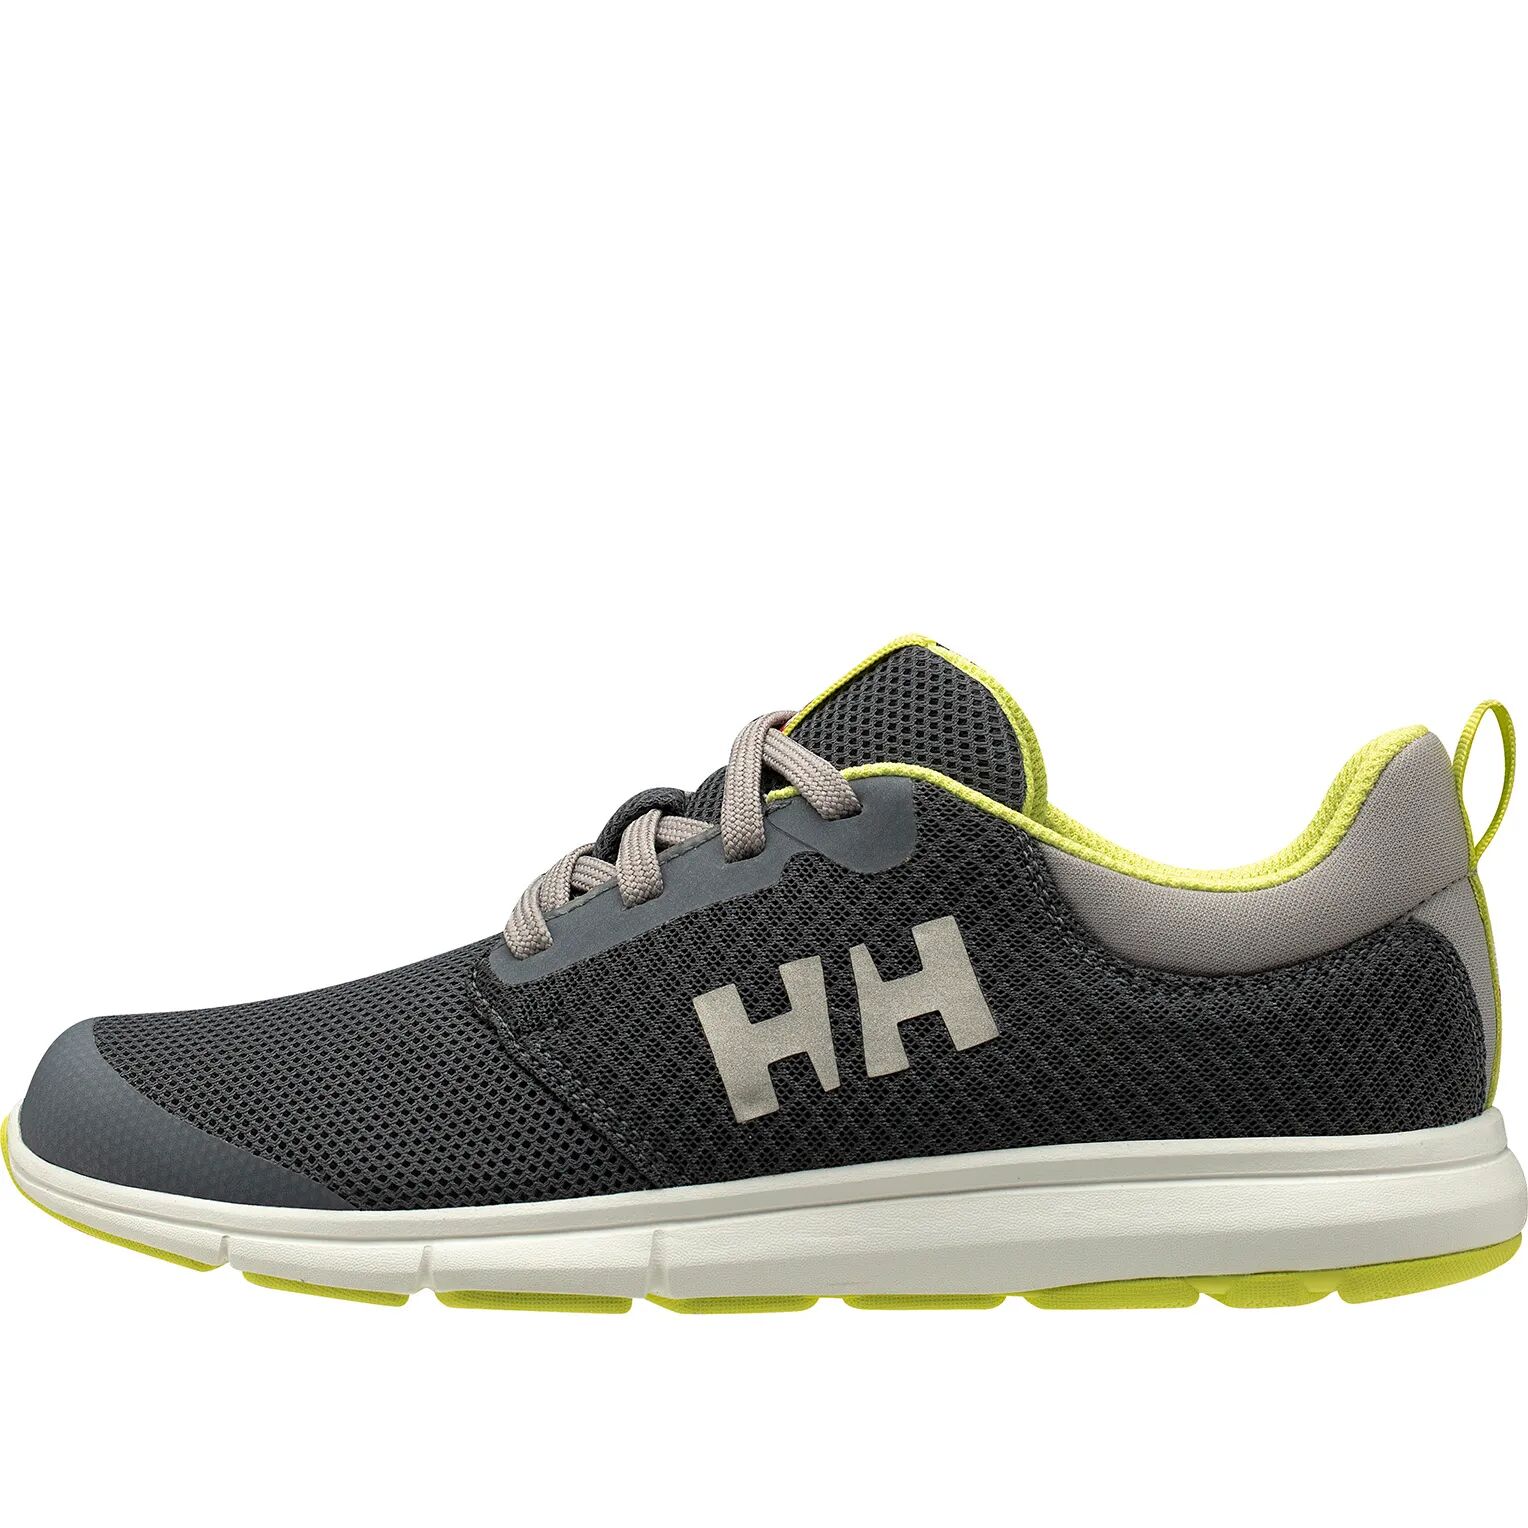 Helly Hansen mujeres zapatos nauticos Gris 5.5